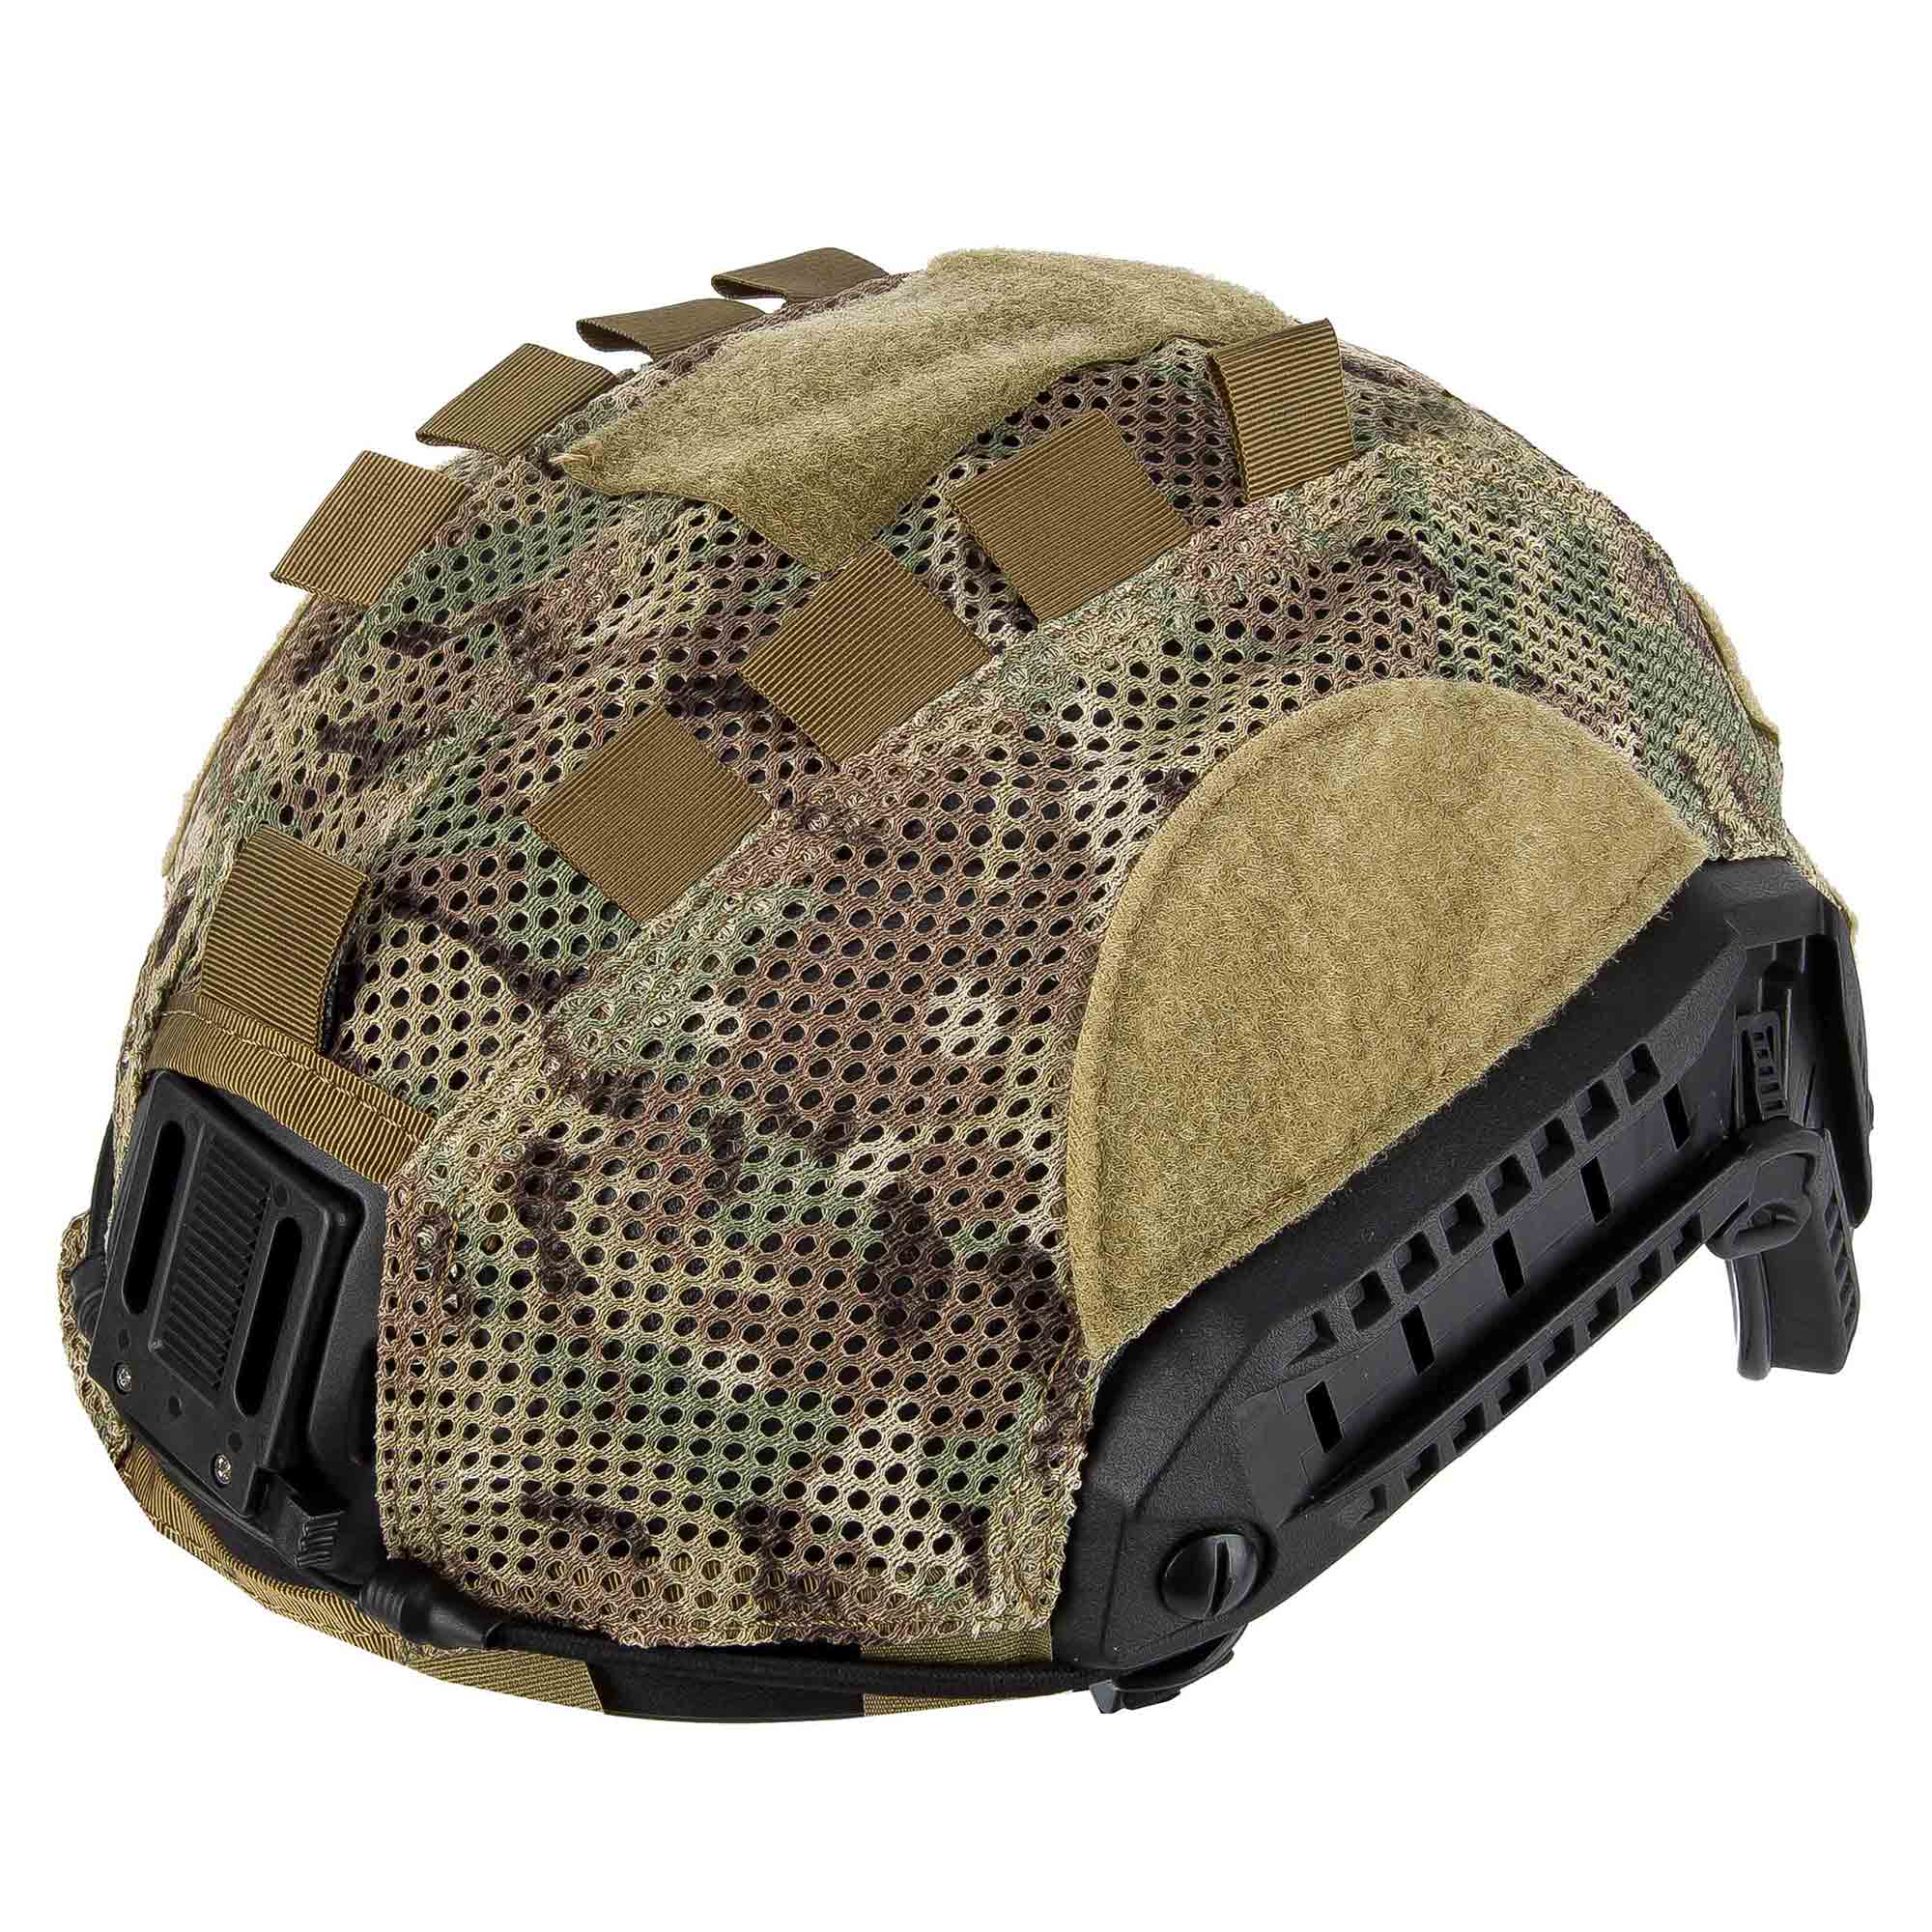 Support de casque de Combat tactique FMA, accessoire de casque